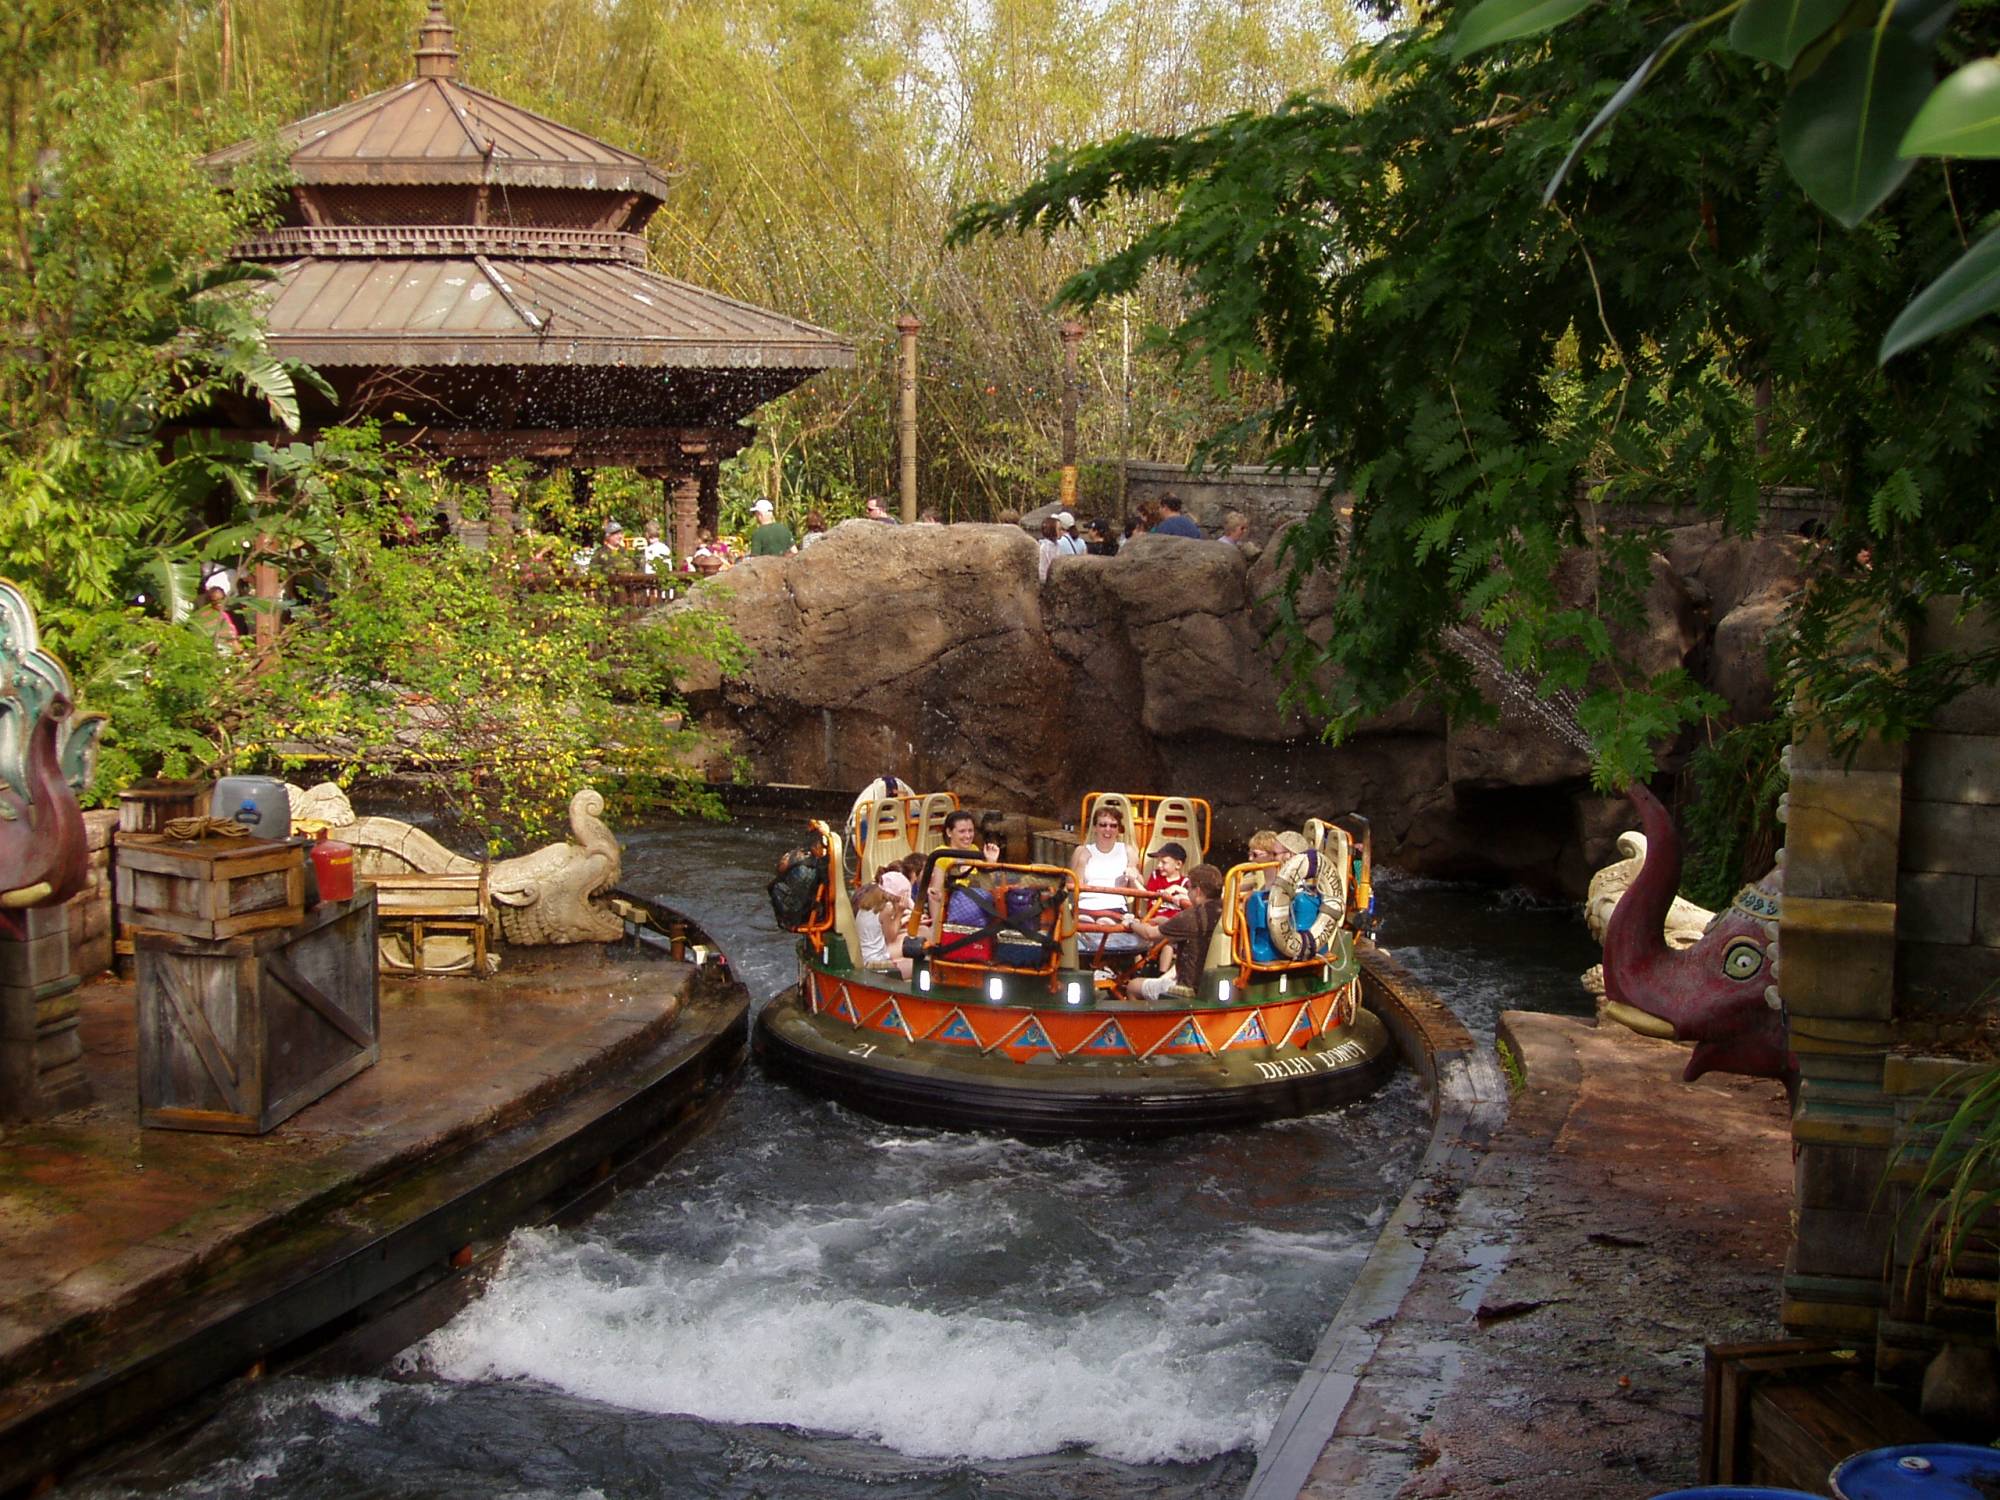 Disney's Animal Kingdom - Kali River Rapids